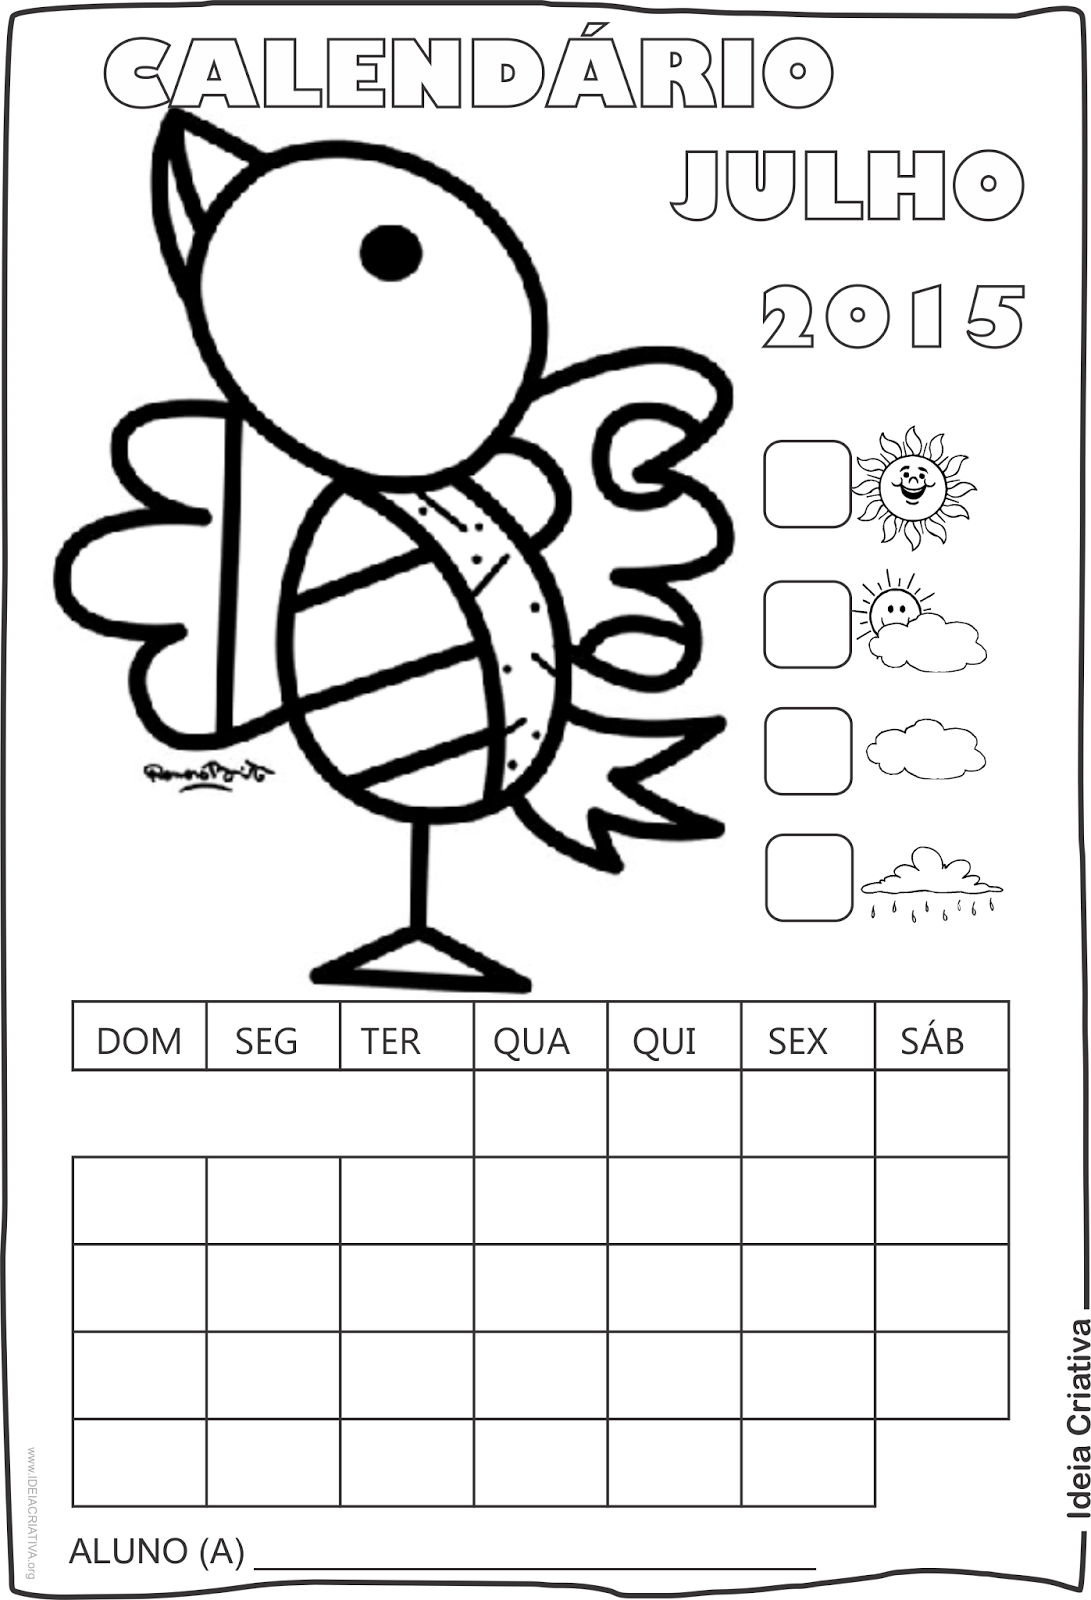  Calendário  Julho 2015 com Desenho Passarinho de Romero Britto para Colorir Sem Numeração